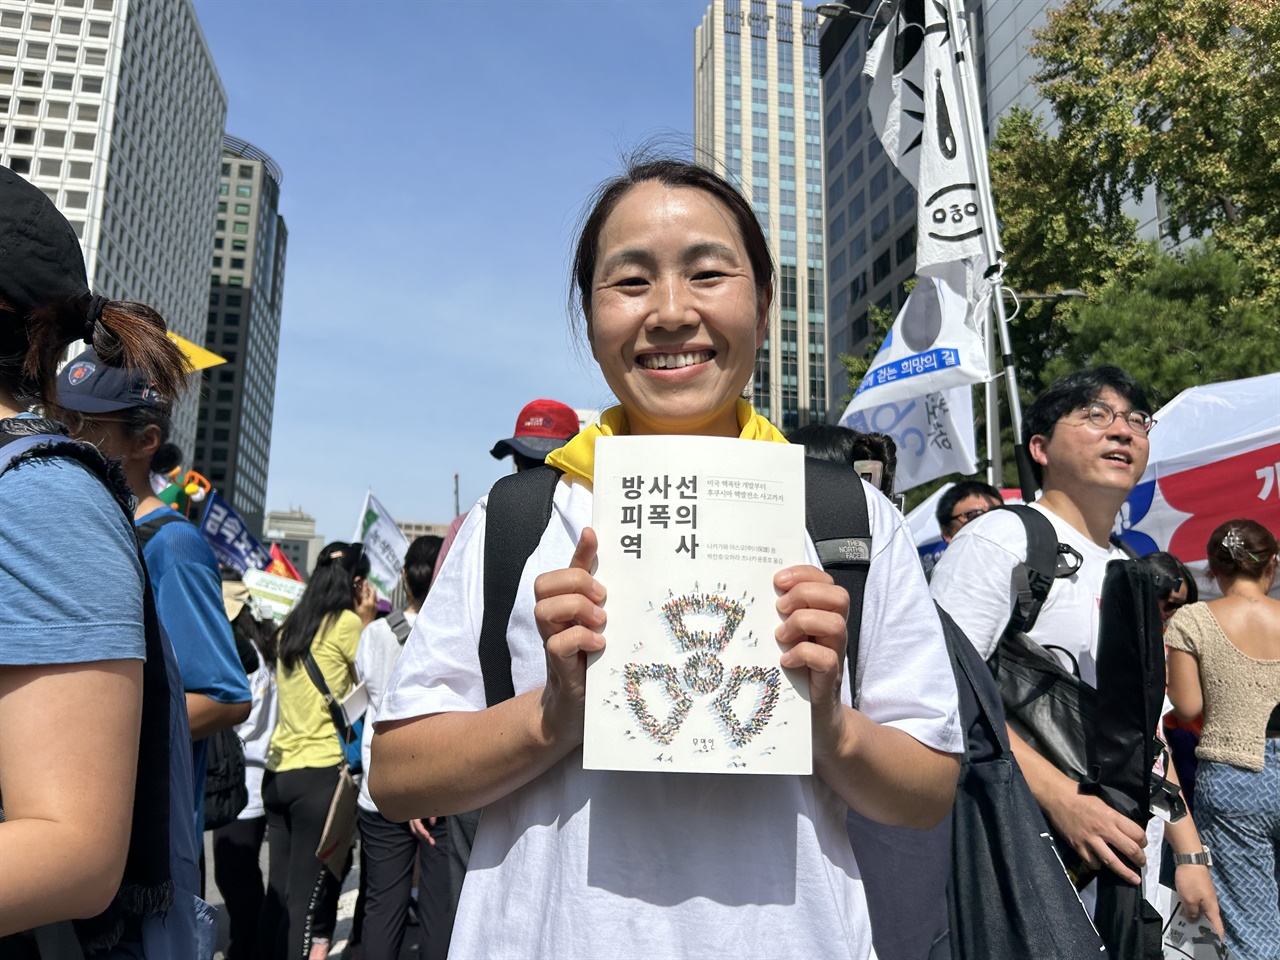 9월 23일 ‘반핵아시아포럼’ 참가자들과 9월 23일 시청 앞에서 열린 기후행동에 참여한 오하라 씨. 오하라 씨는 “핵산업계와 싸우기 위해서는 방사능피폭에 대한 이해가 필요하다”라고 말한다. 